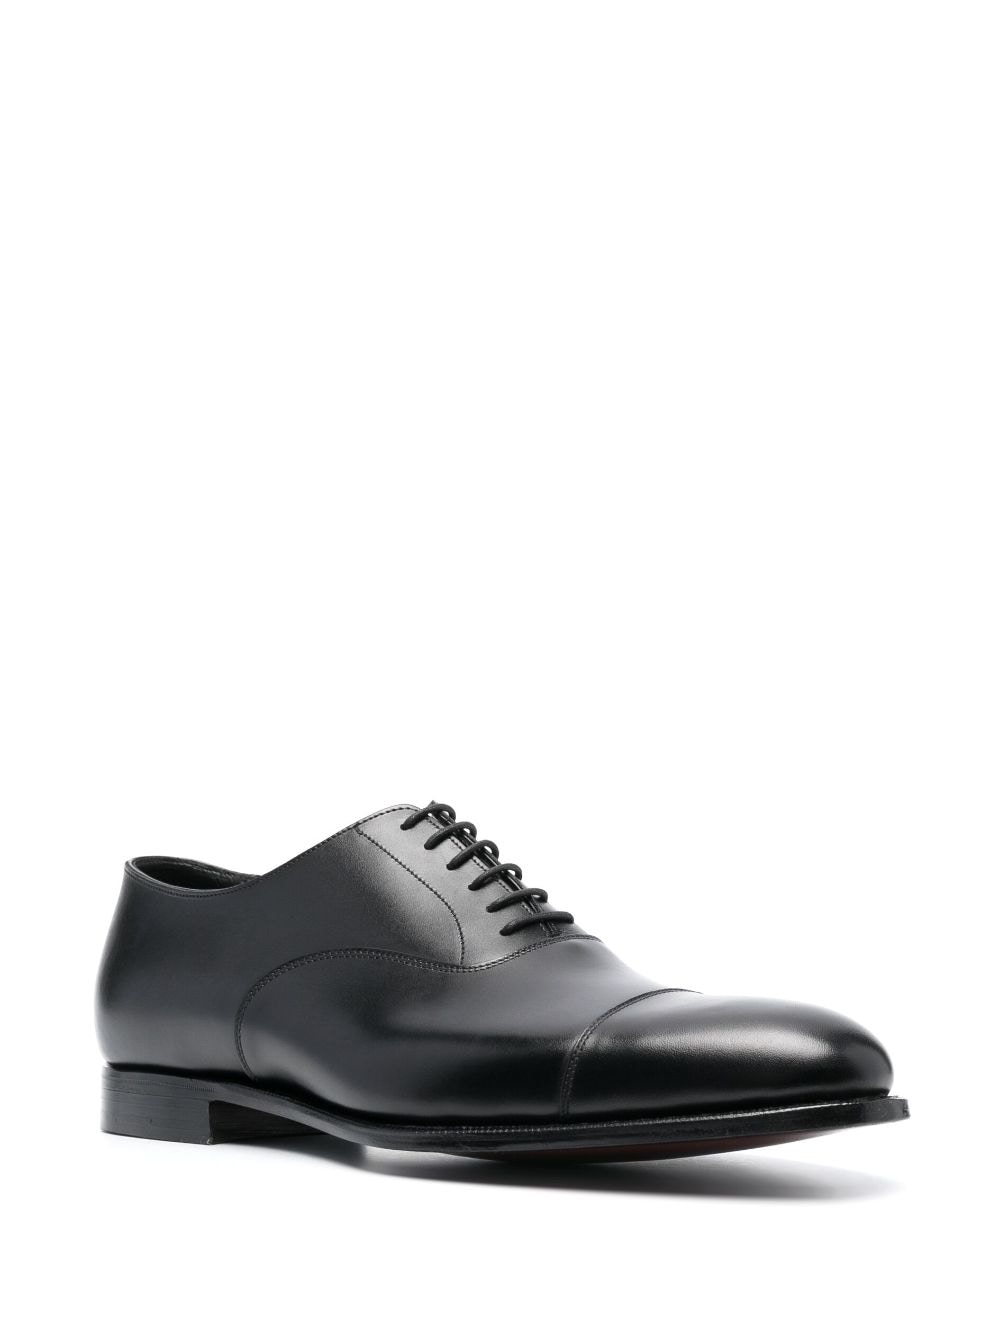 Shop Crockett & Jones Leather Oxford Shoes In Black